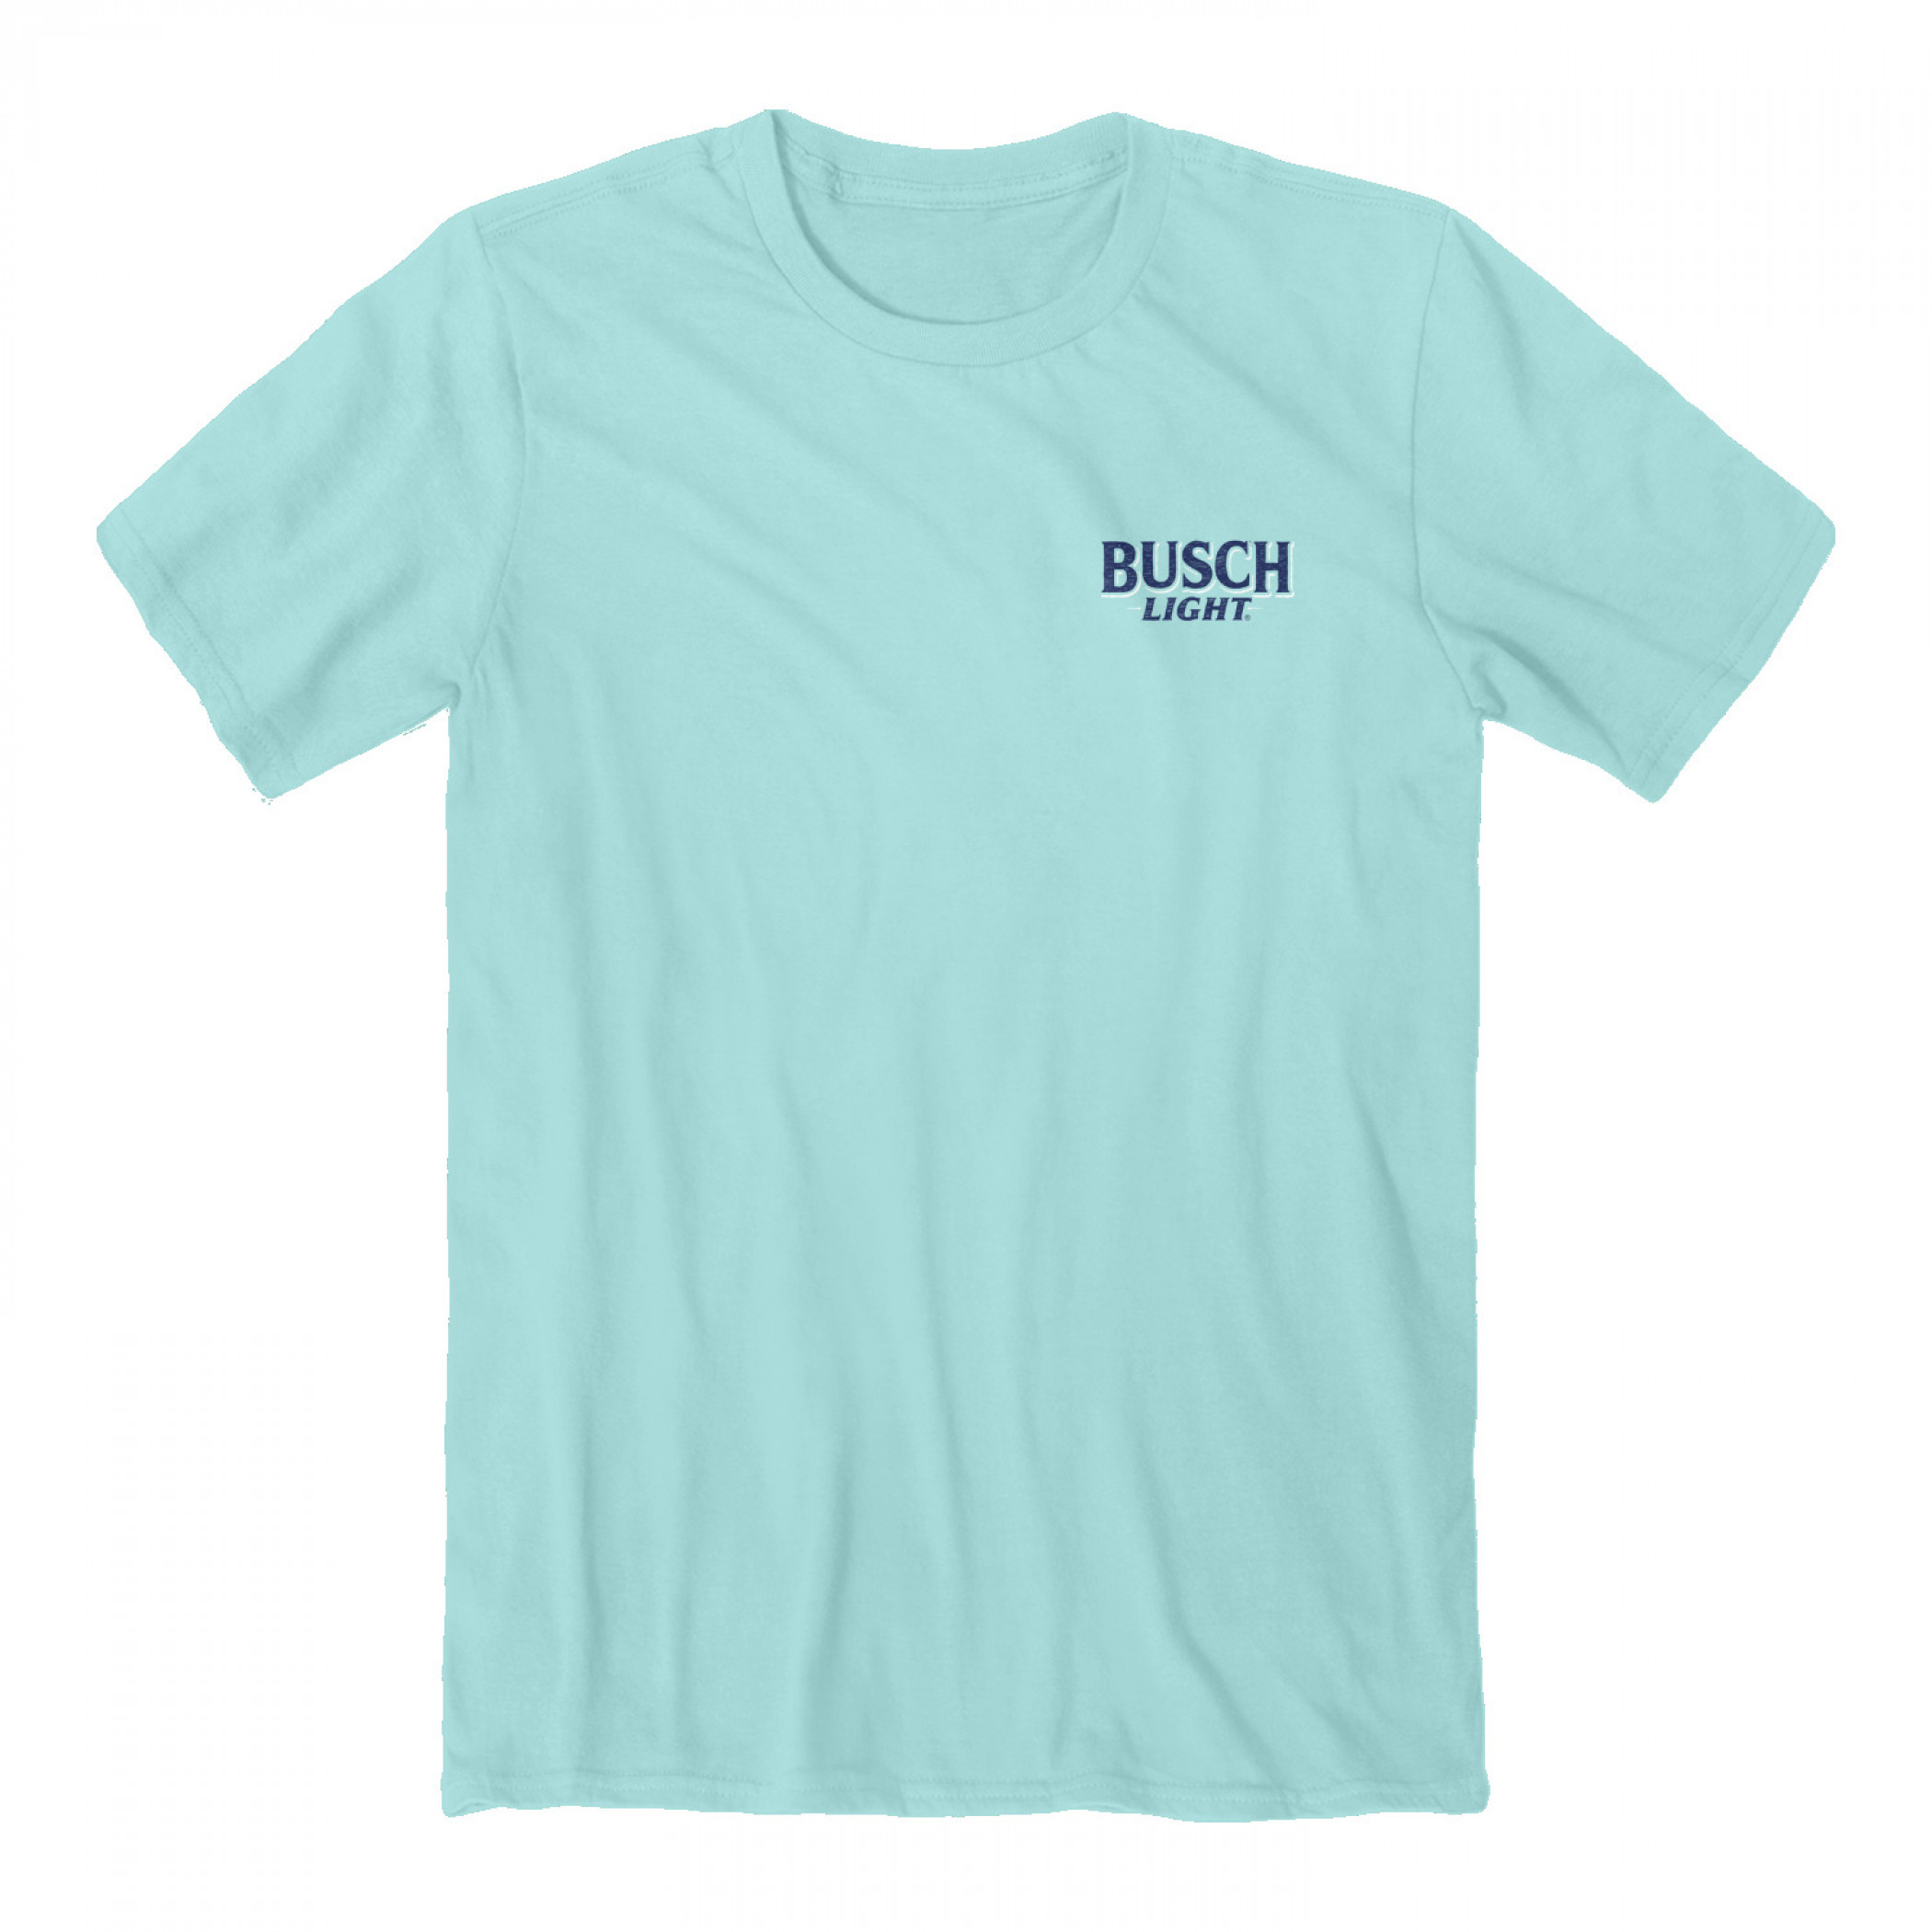 Busch Light Man's Best Friend Front and Back Print T-Shirt-3XLarge